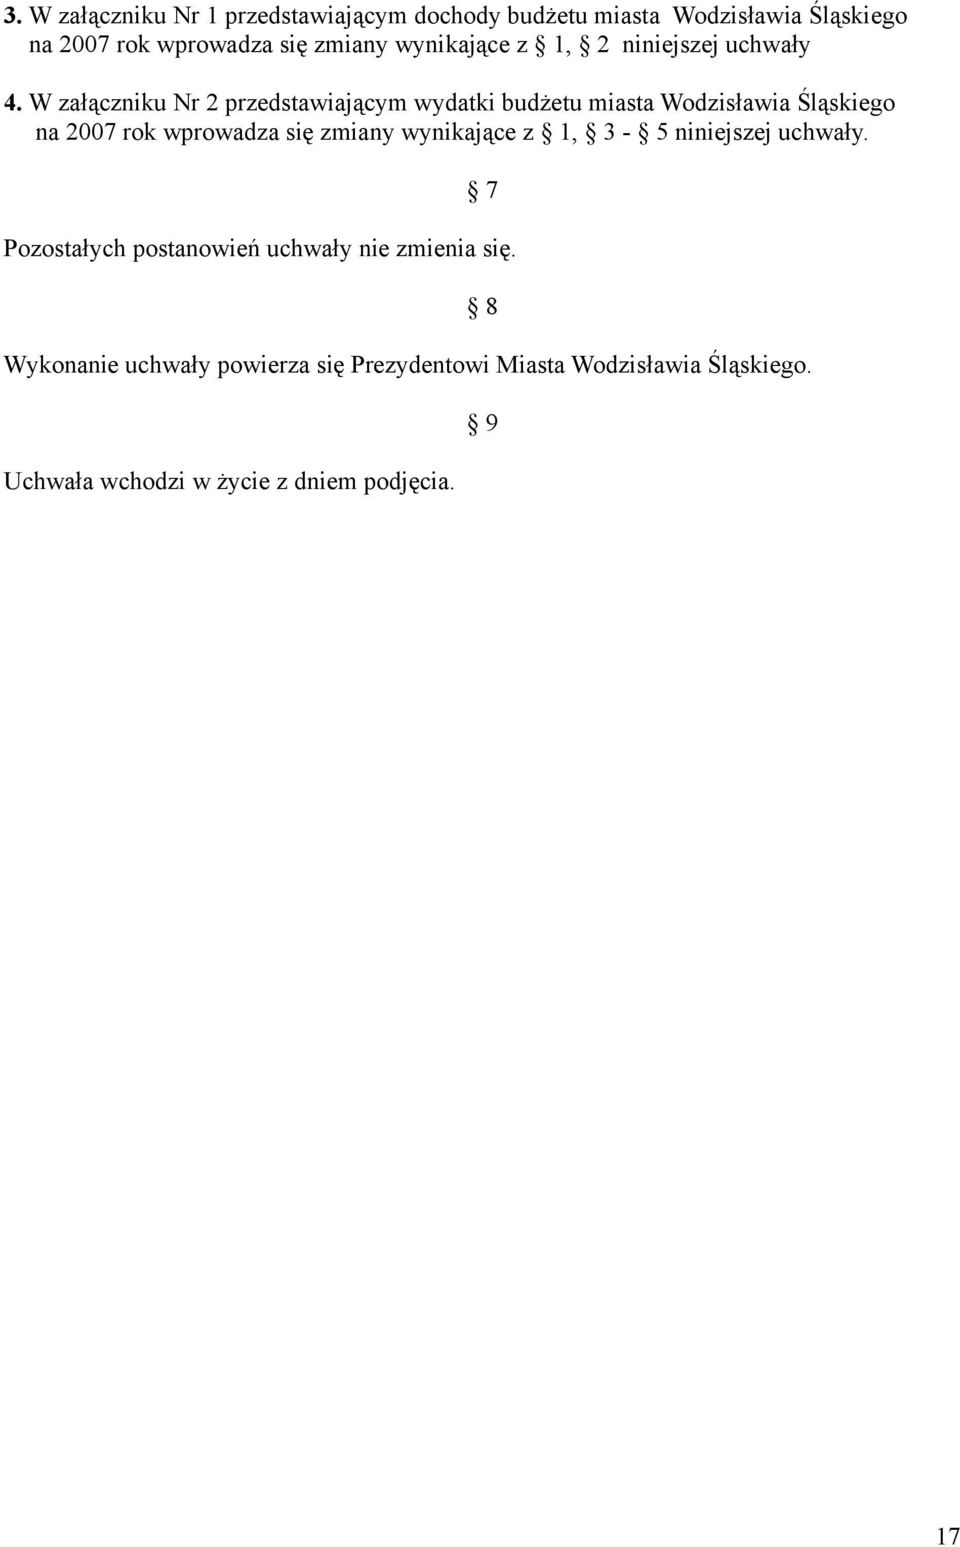 W załączniku Nr 2 przedstawiającym wydatki budżetu miasta Wodzisławia Śląskiego na 2007 rok wprowadza się zmiany